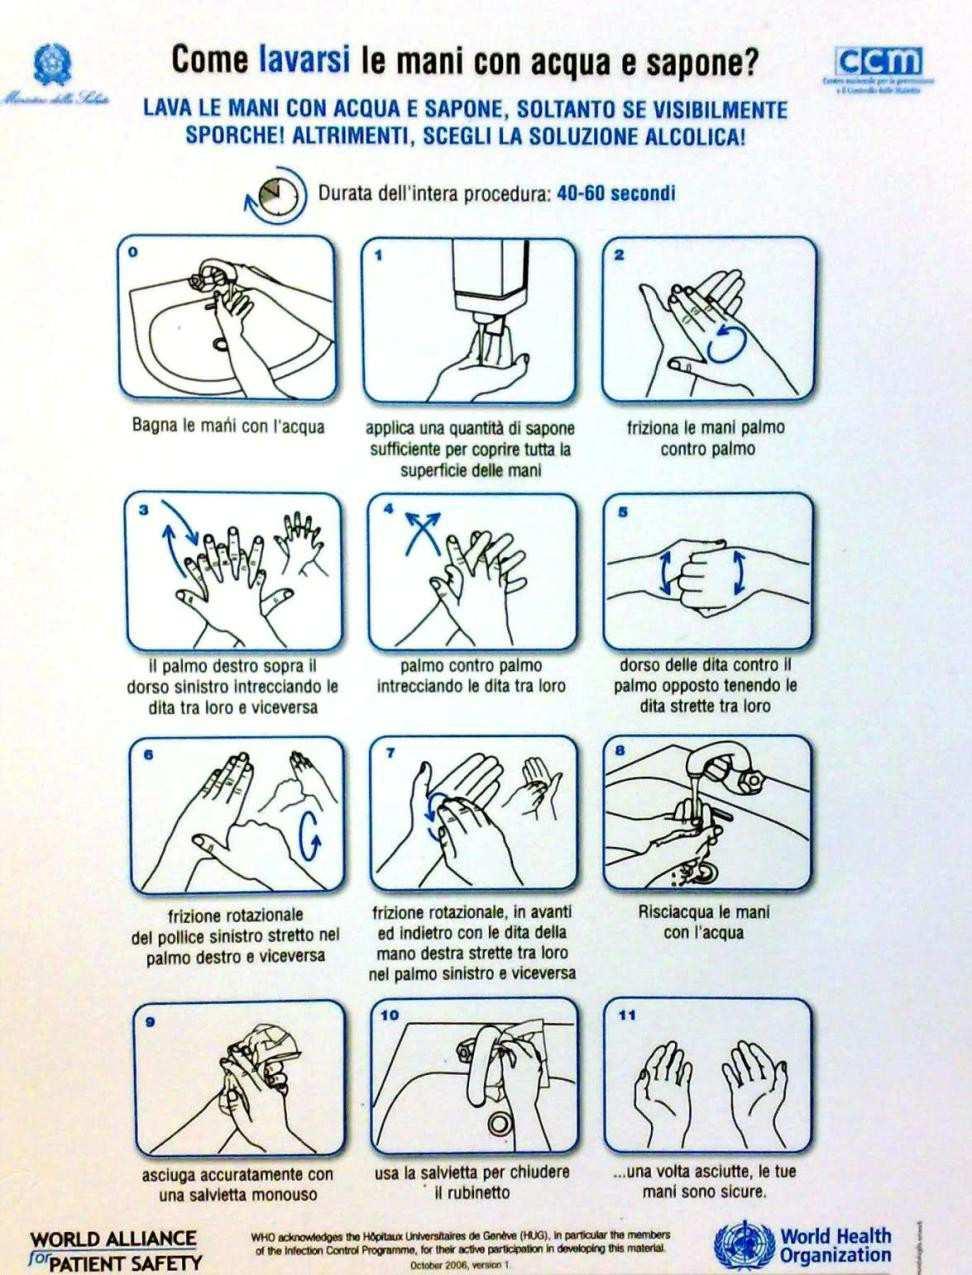 Come lavarsi le mani con acqua e sapone? 1. Bagna le mani con acqua 2. Applica una quantità di sapone per coprire tutta la superficie delle mani 3. Friziona le mani palmo contro palmo 4.